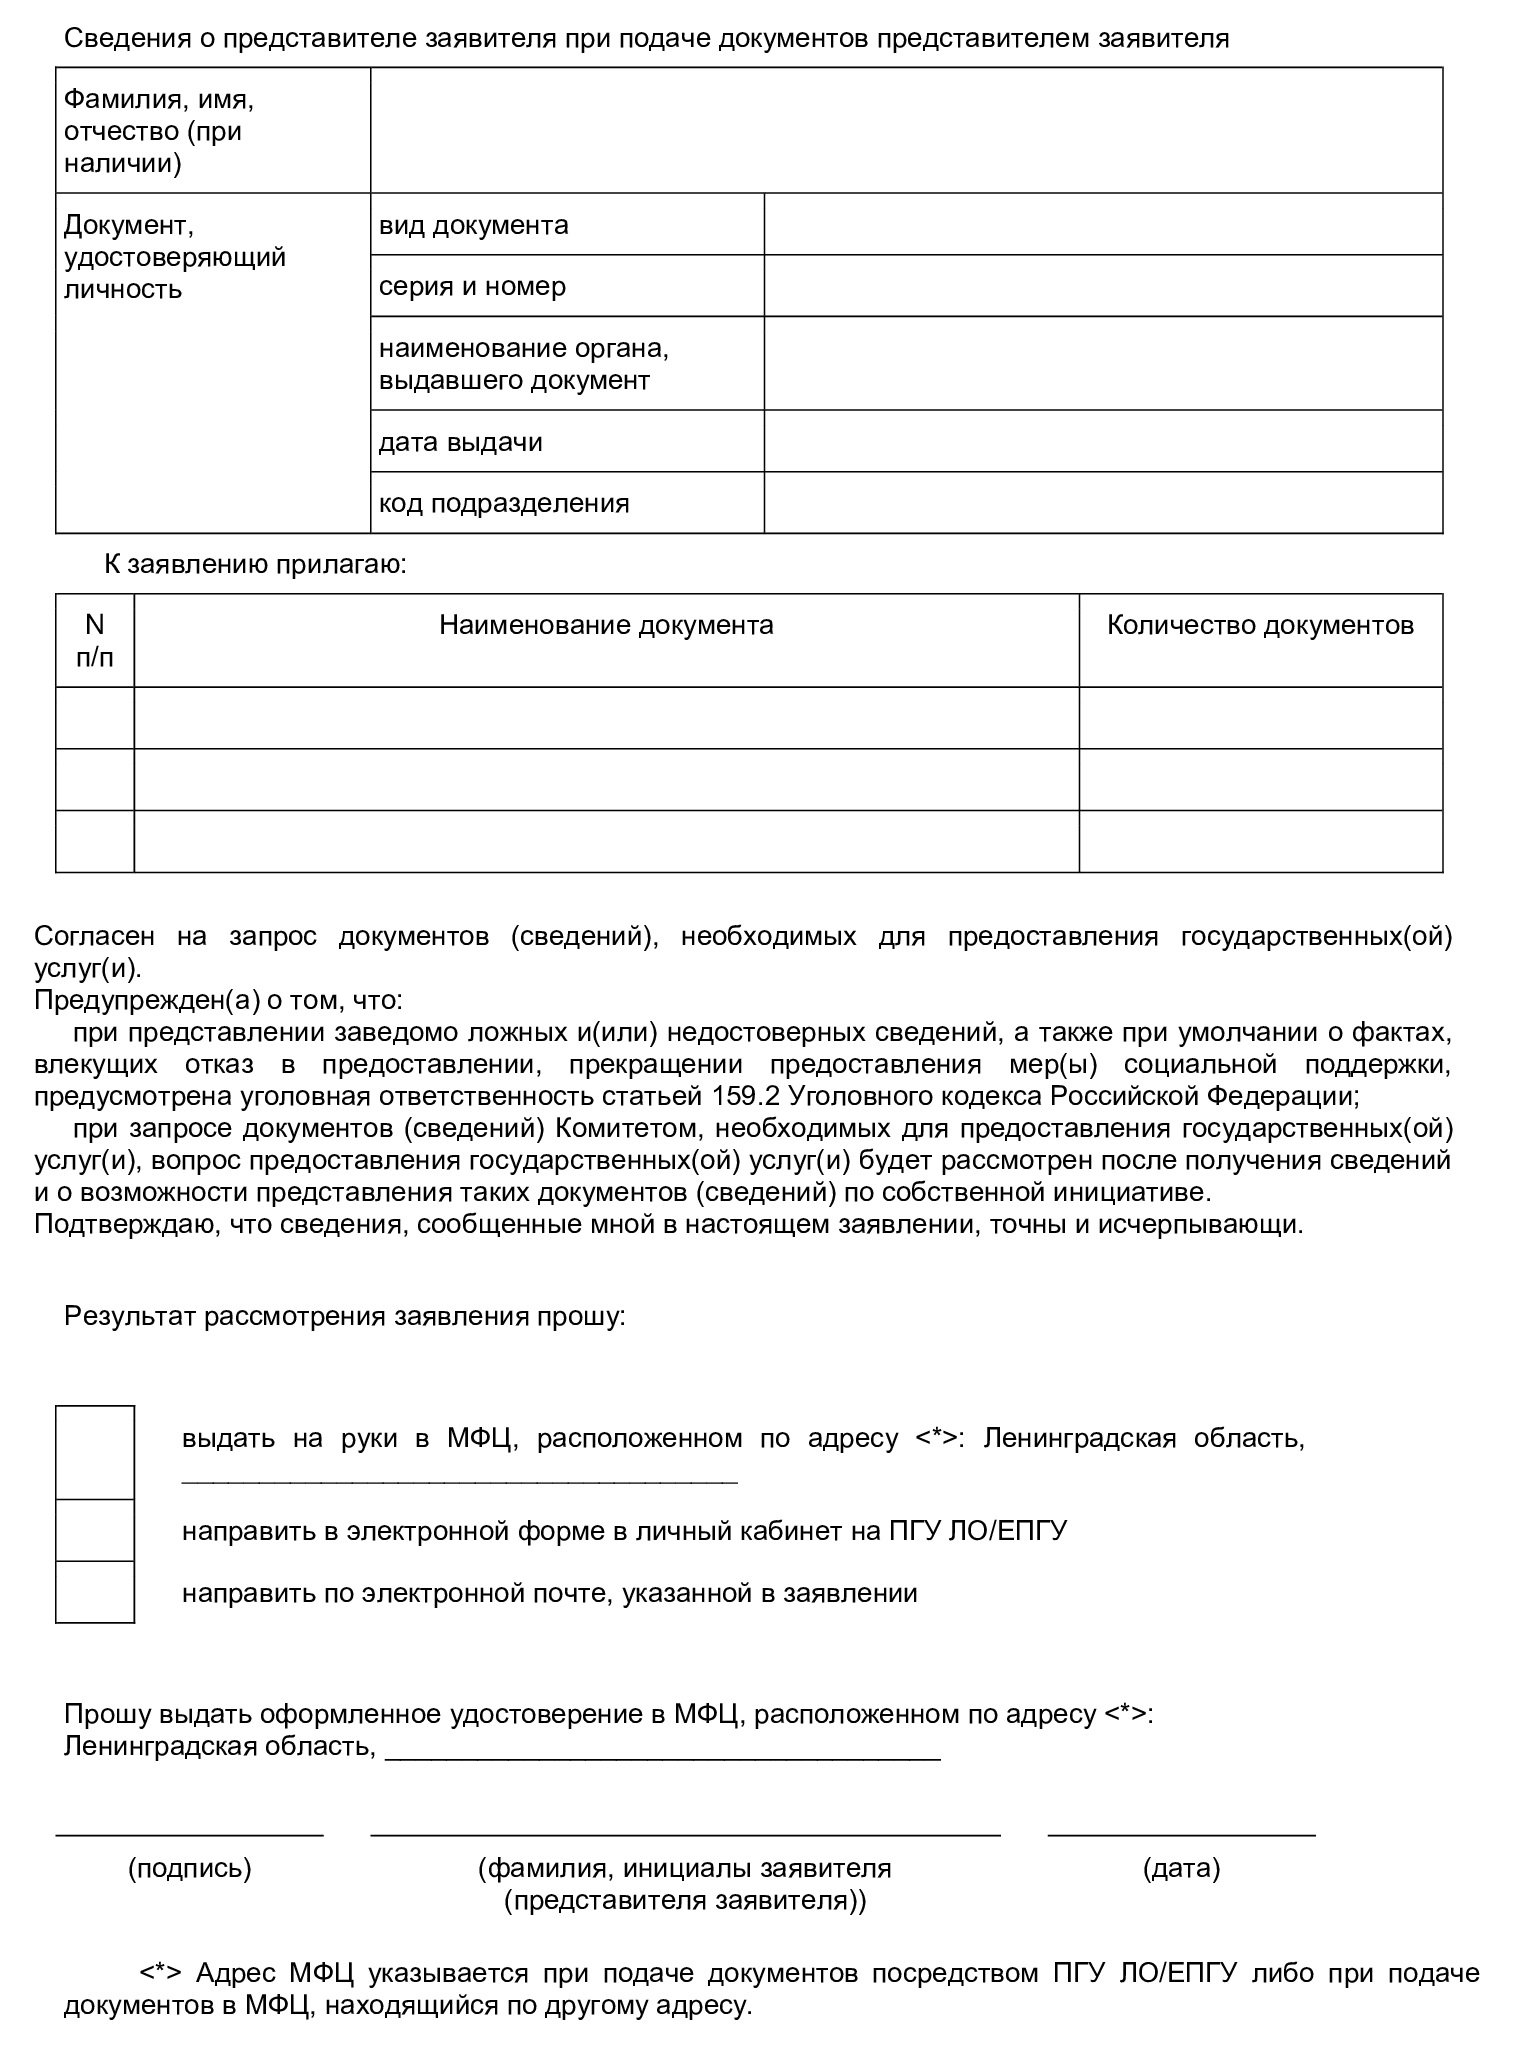 Заявление на звание ветерана труда Ленинградской области, стр. 2 